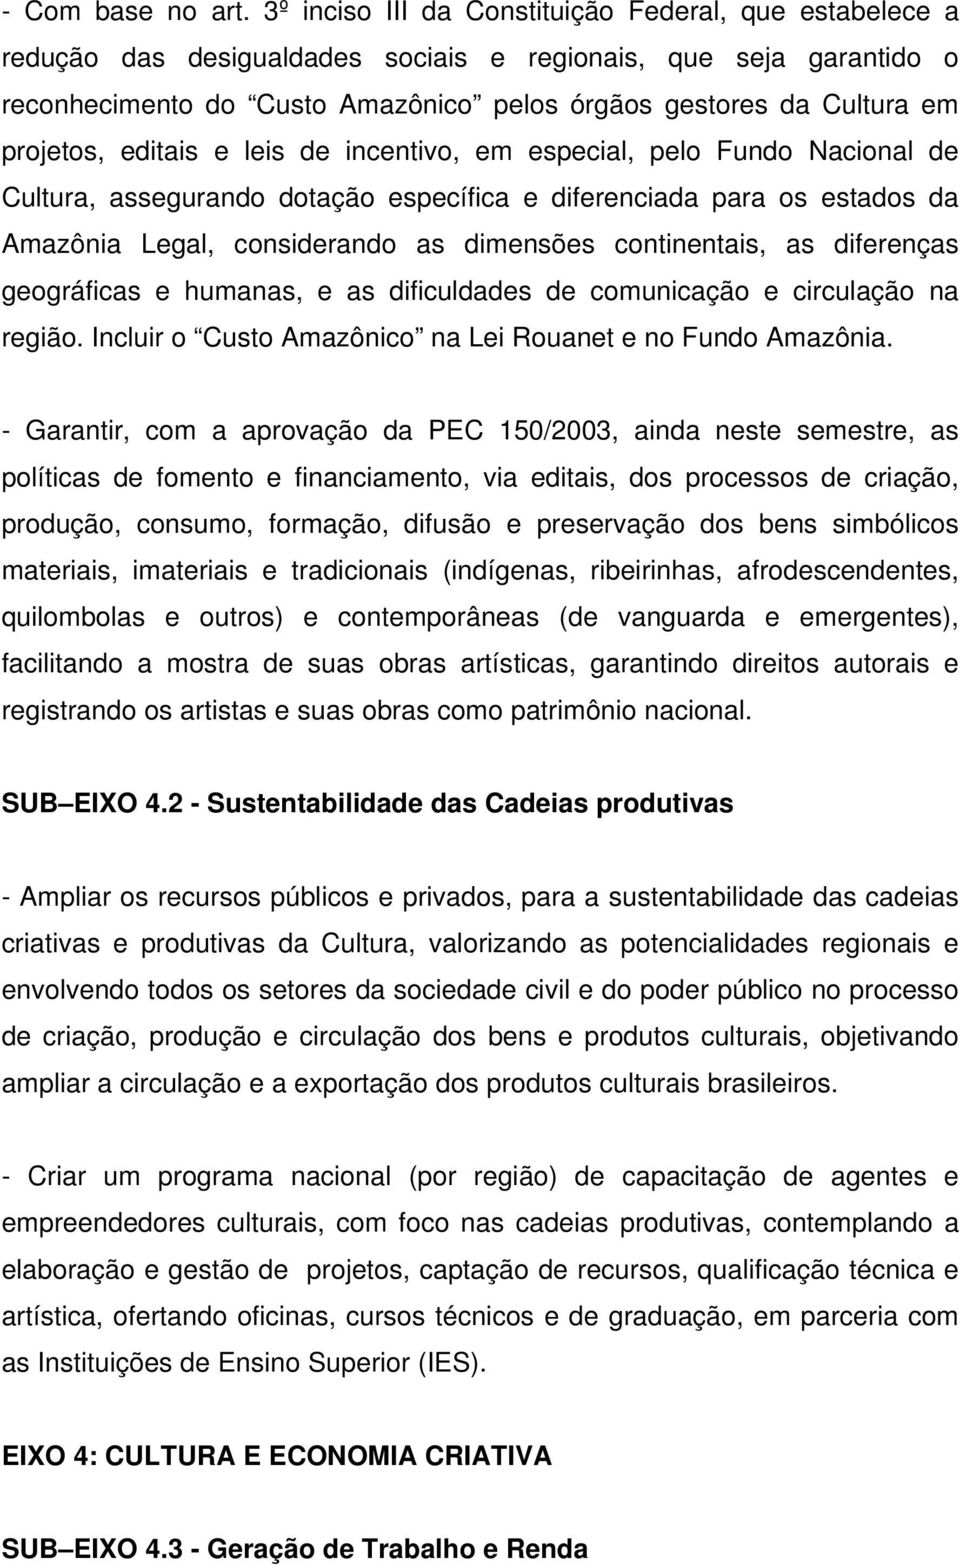 projetos, editais e leis de incentivo, em especial, pelo Fundo Nacional de Cultura, assegurando dotação específica e diferenciada para os estados da Amazônia Legal, considerando as dimensões